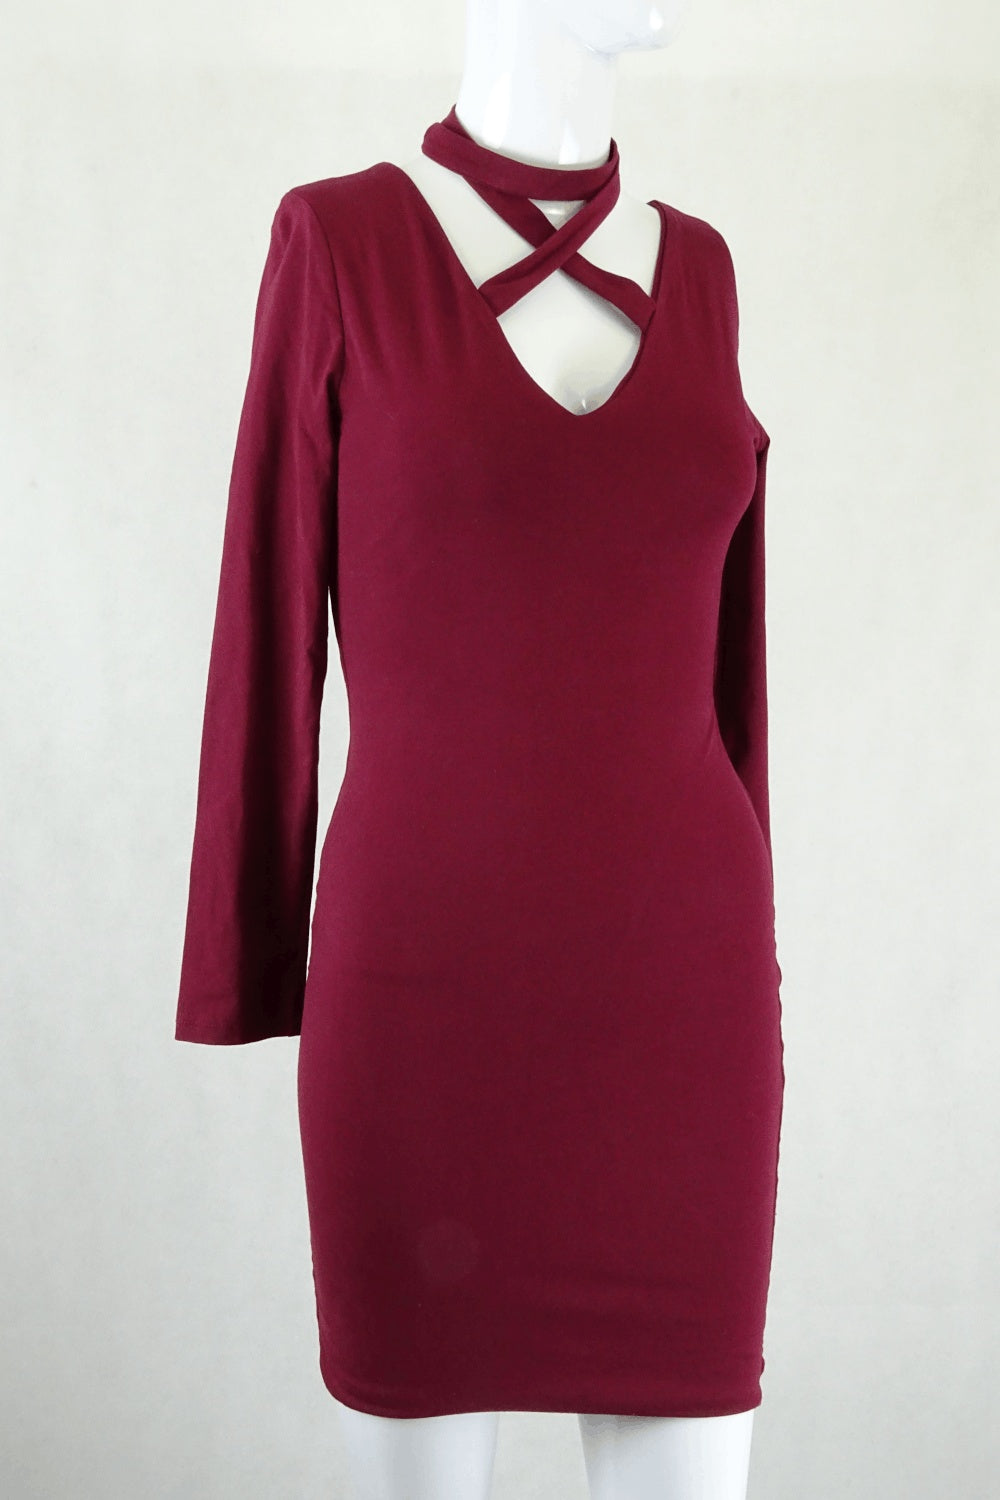 Luvalot Maroon Dress 8